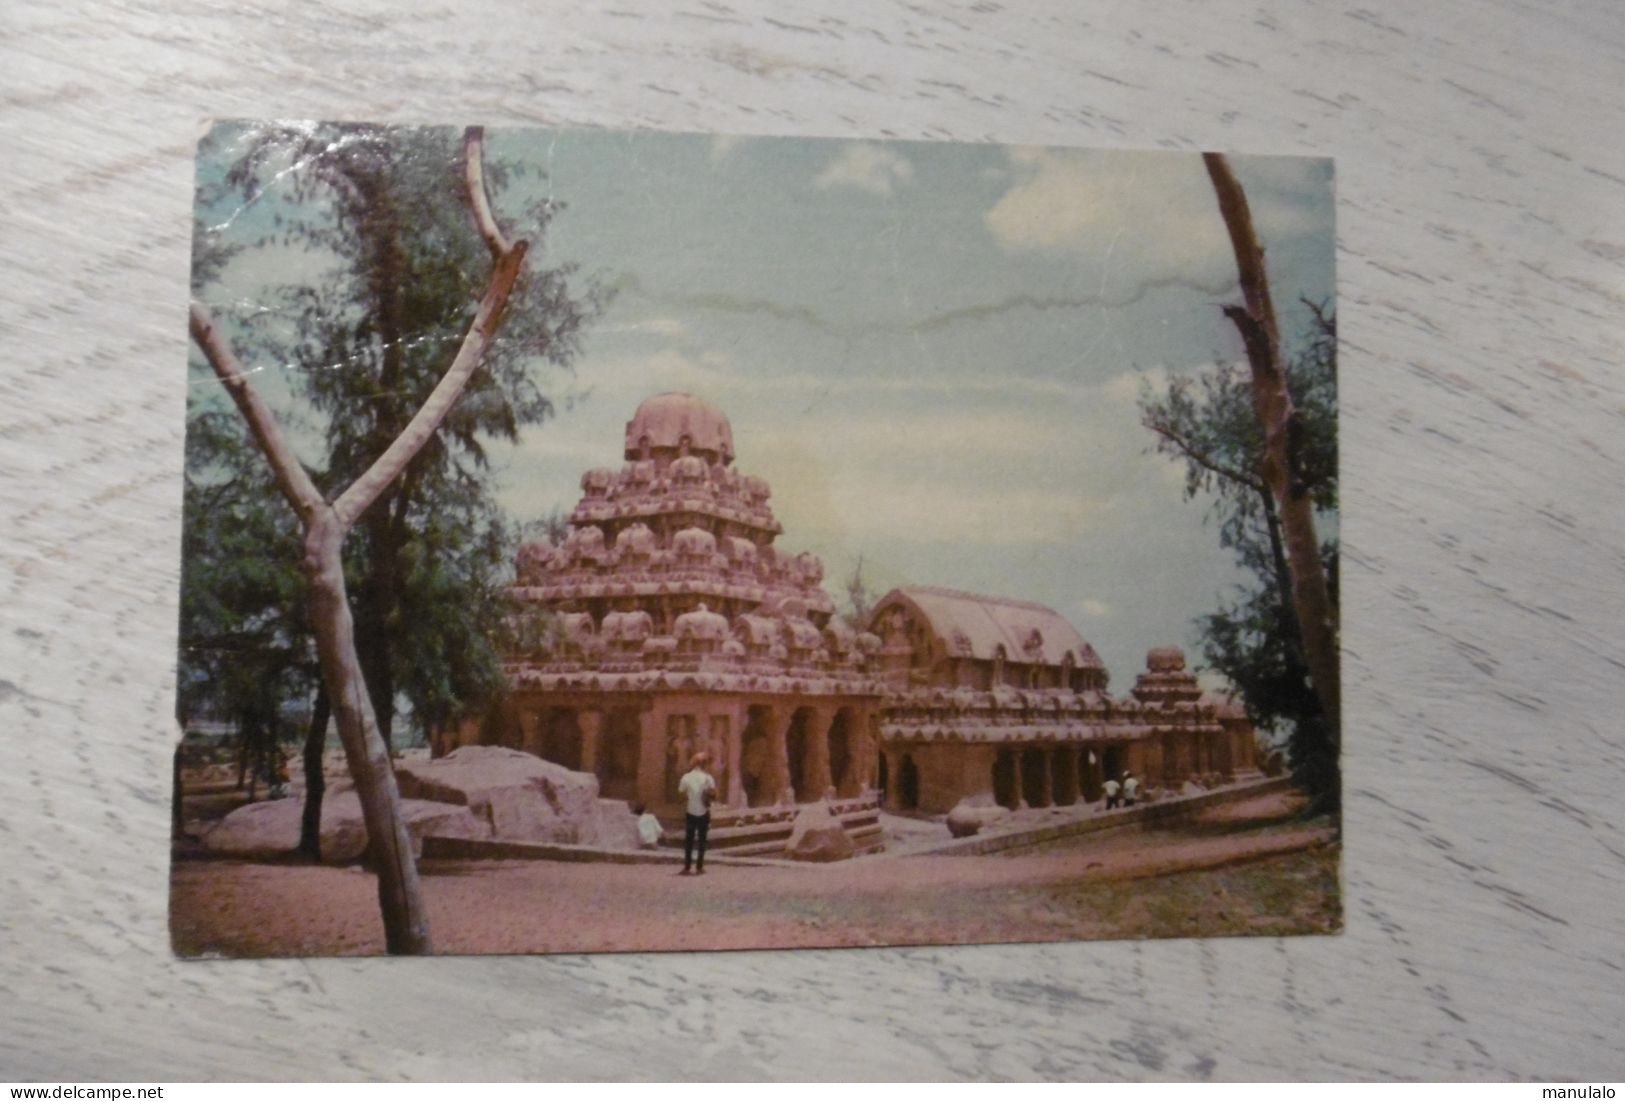 Mahabalipuram - India